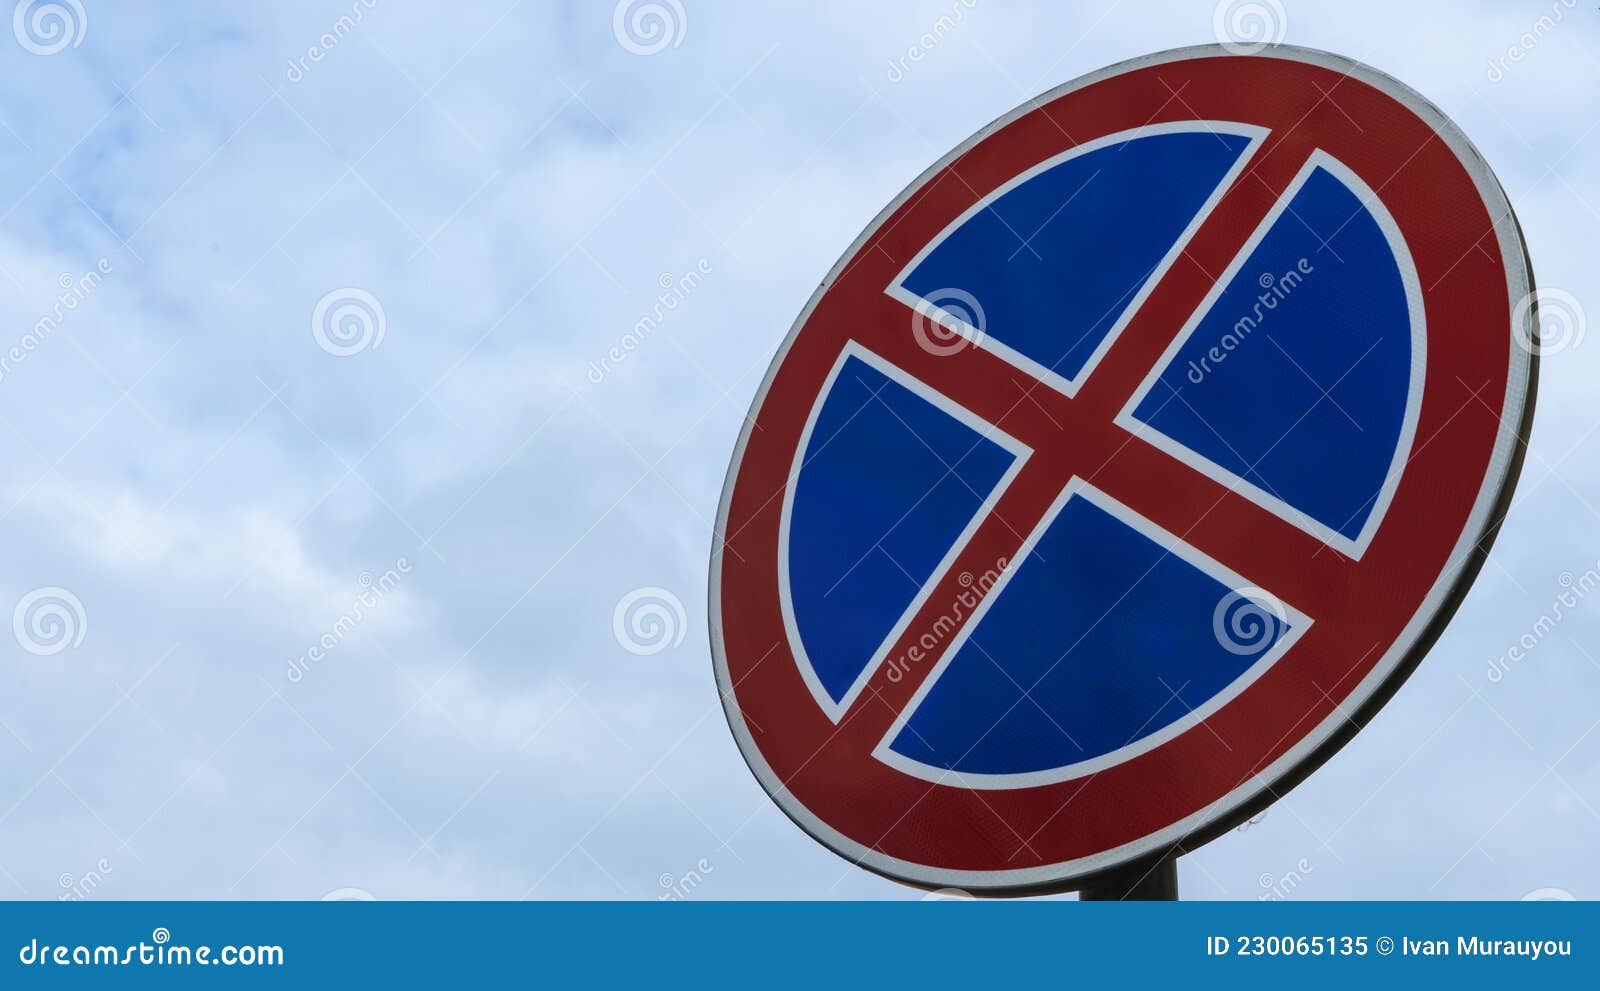 Biển báo đường tròn có chữ X màu đỏ trên nền xanh là một phần của hệ thống biển báo giao thông đường bộ, hỗ trợ cho việc duy trì trật tự và an toàn giao thông trên đường phố. Hãy xem hình ảnh liên quan để hiểu rõ hơn về ý nghĩa của biển báo này.